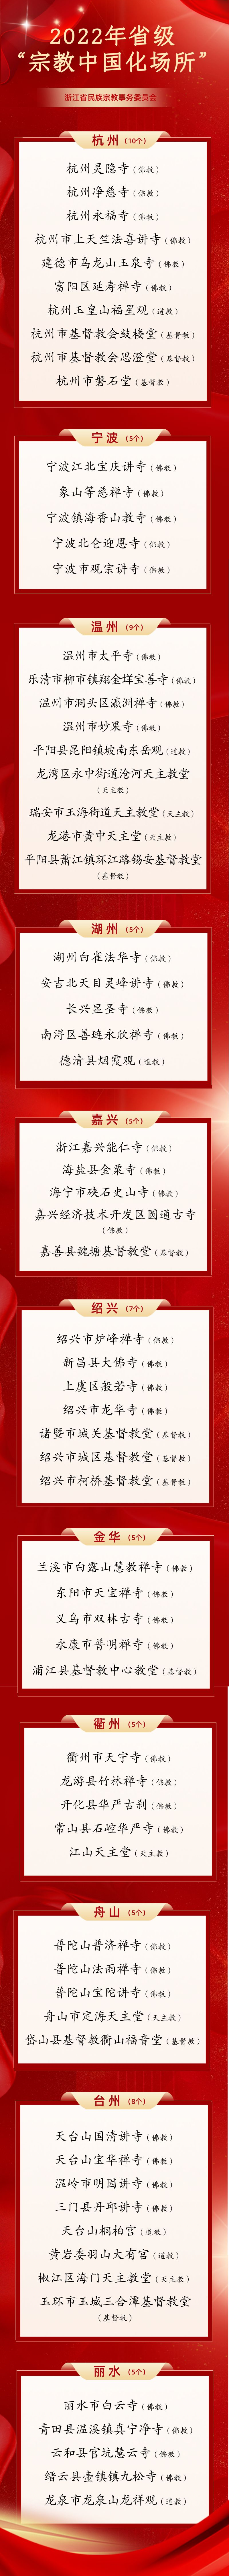 浙江省2022年“宗教中国化场所”名单公布 杭州灵隐寺等入选